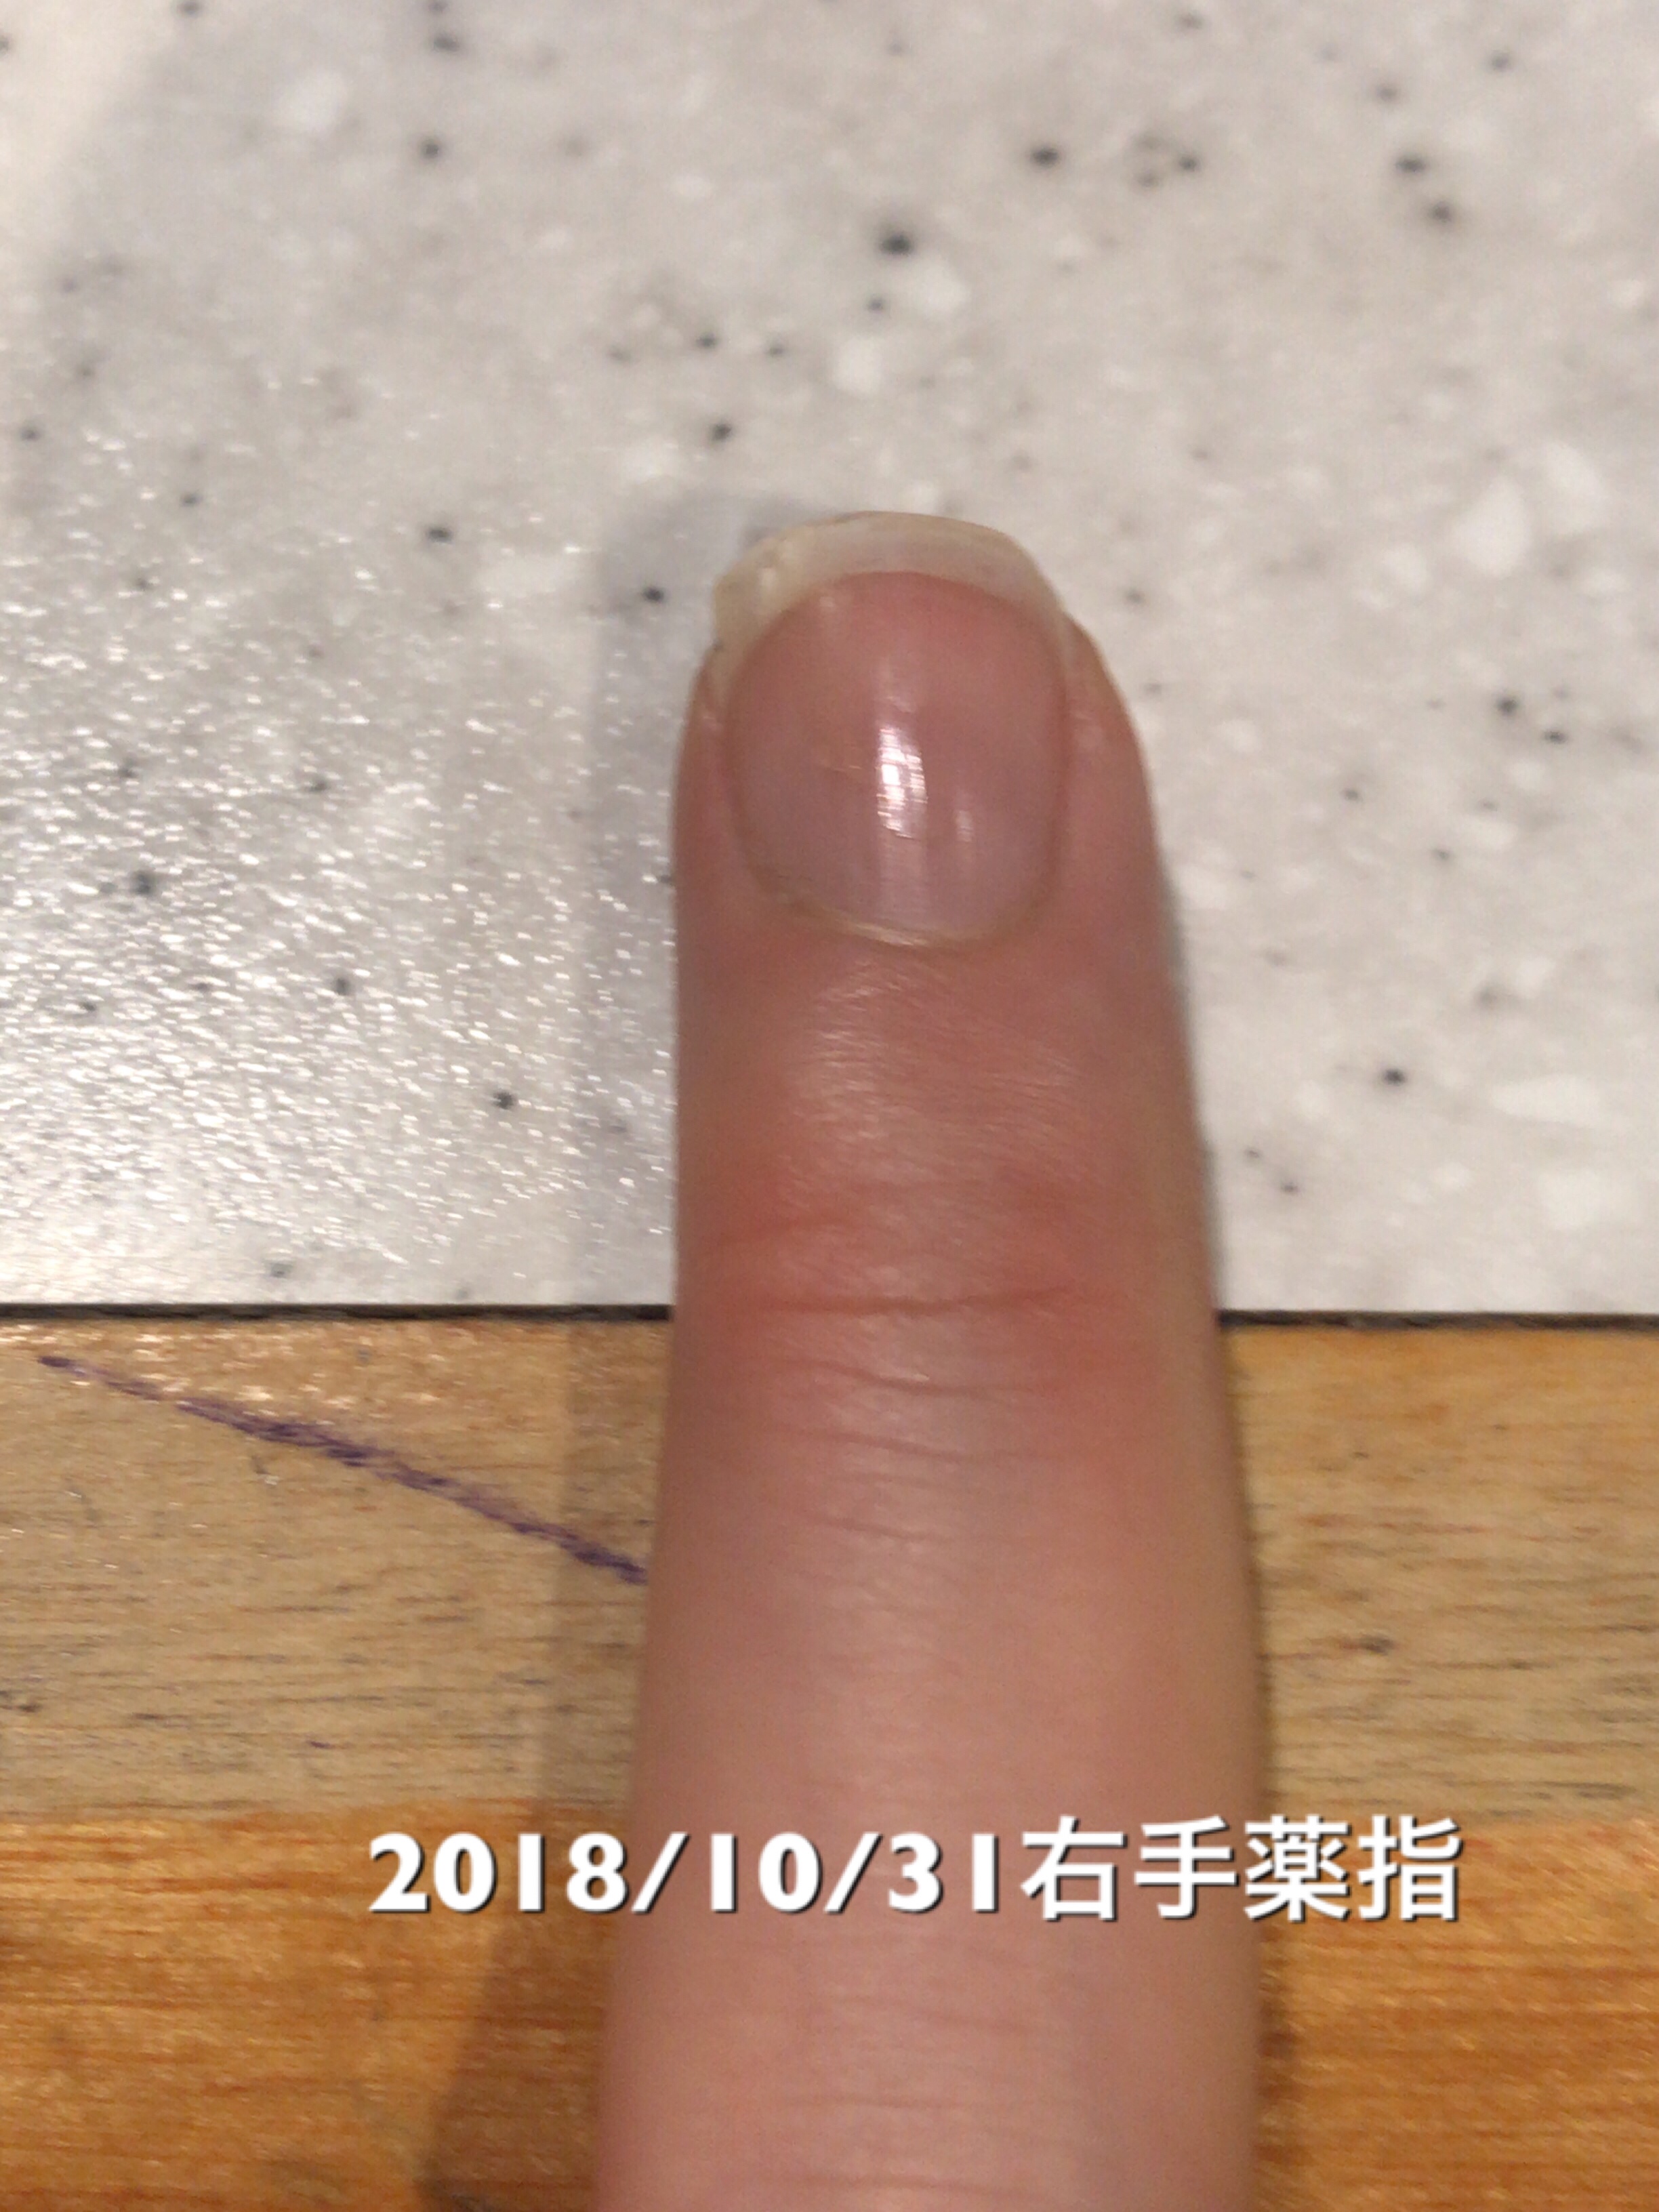 右手薬指は今回は変化なし。